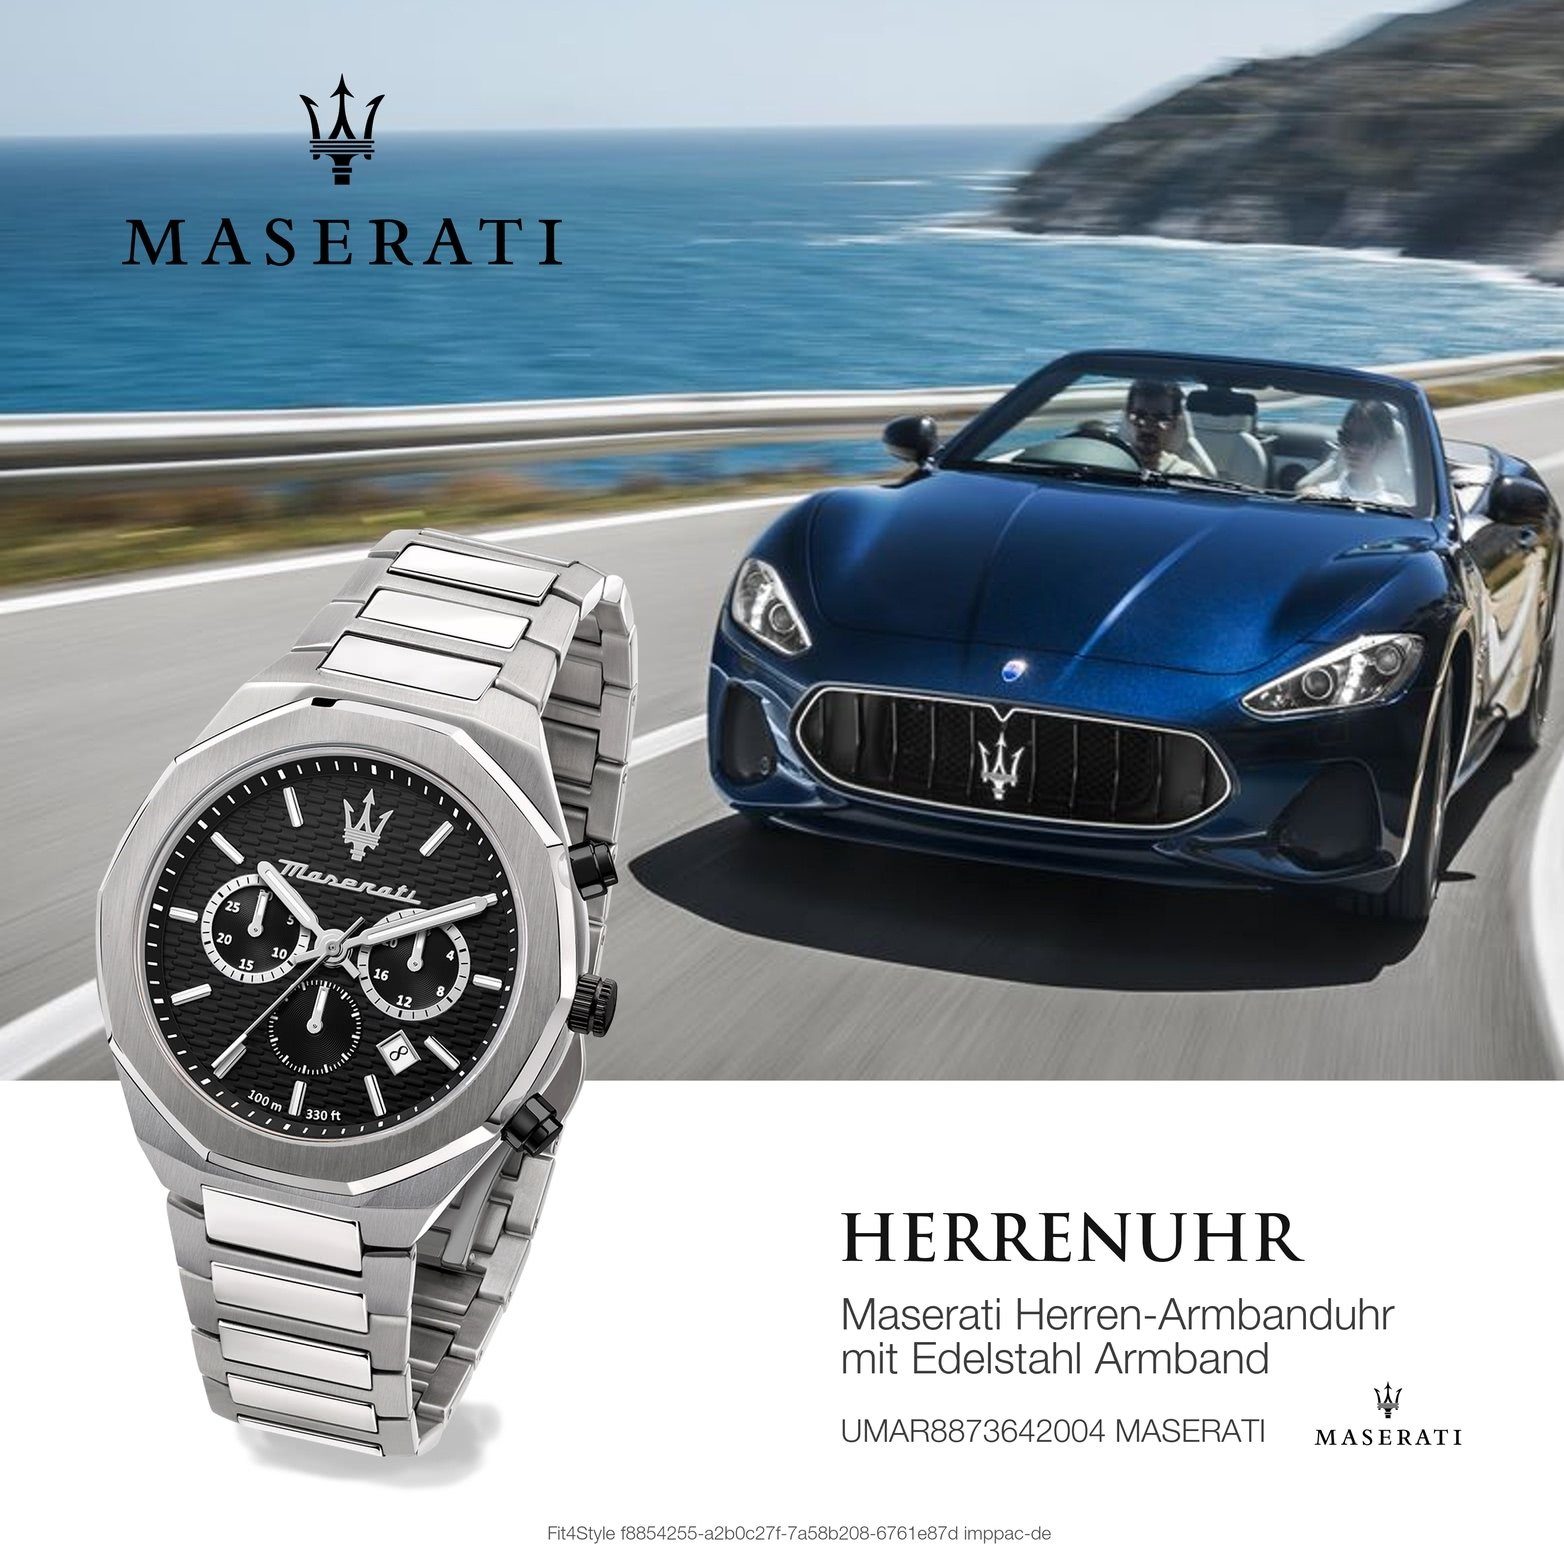 MASERATI Chronograph Maserati Edelstahl (ca. Gehäuse, 45mm) Edelstahlarmband, groß schwarz Armband-Uhr, Herrenuhr rundes